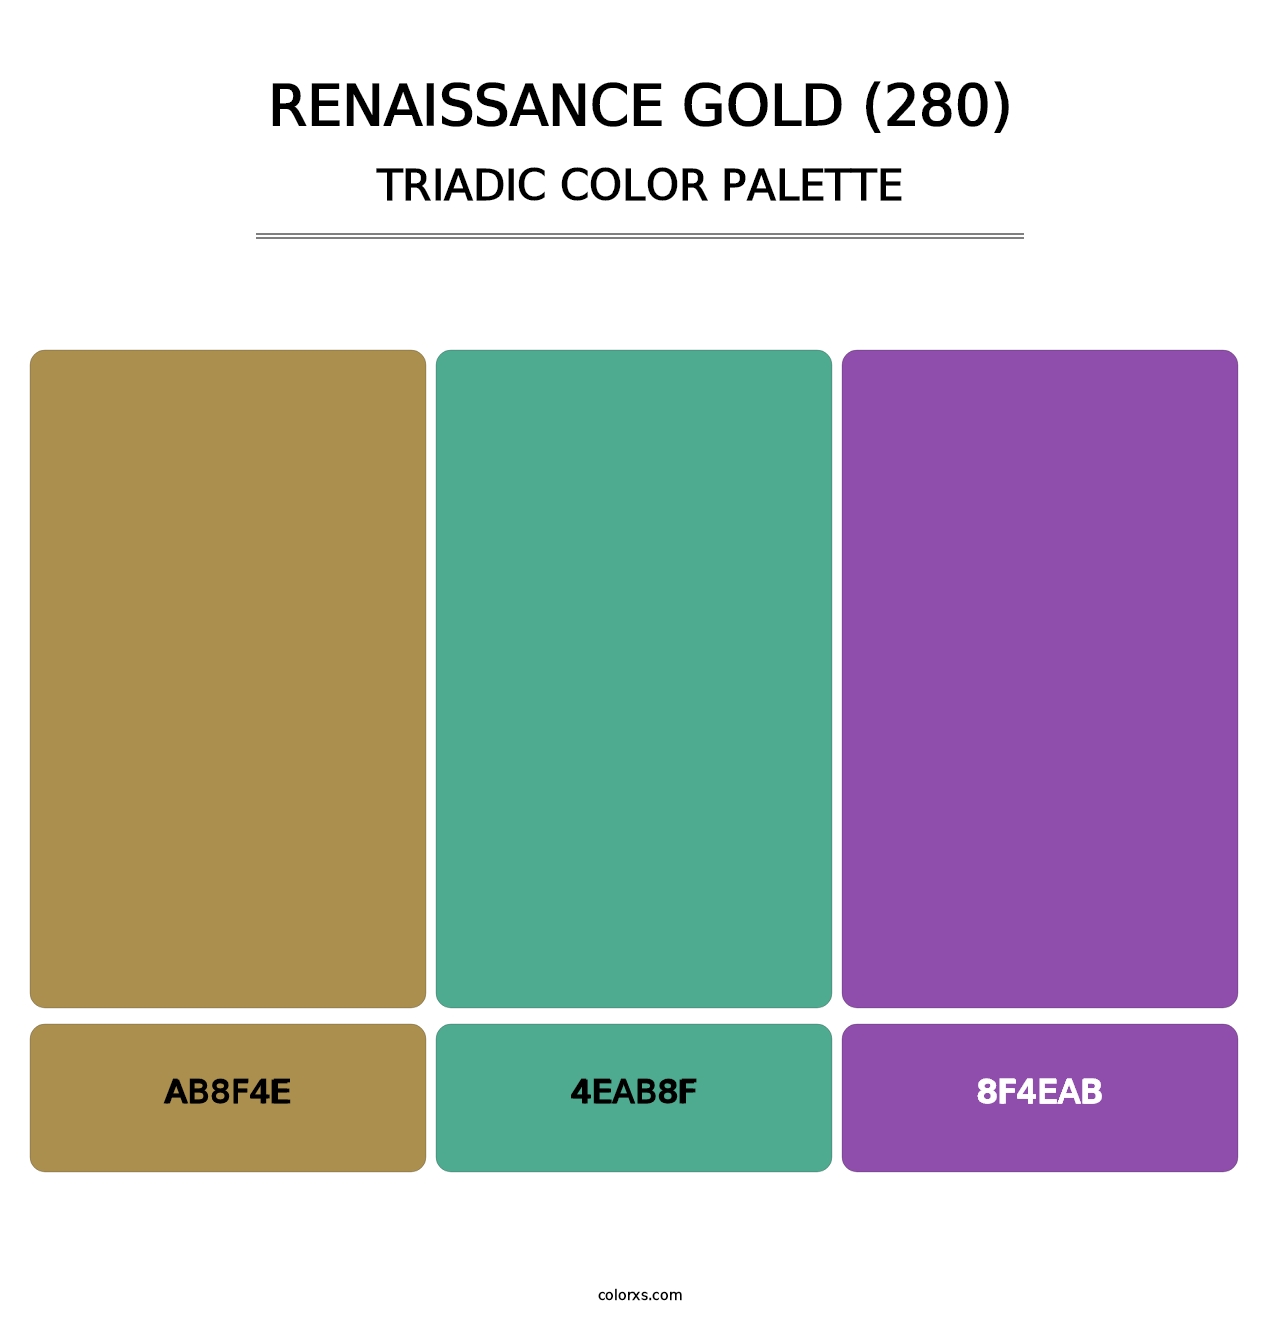 Renaissance Gold (280) - Triadic Color Palette